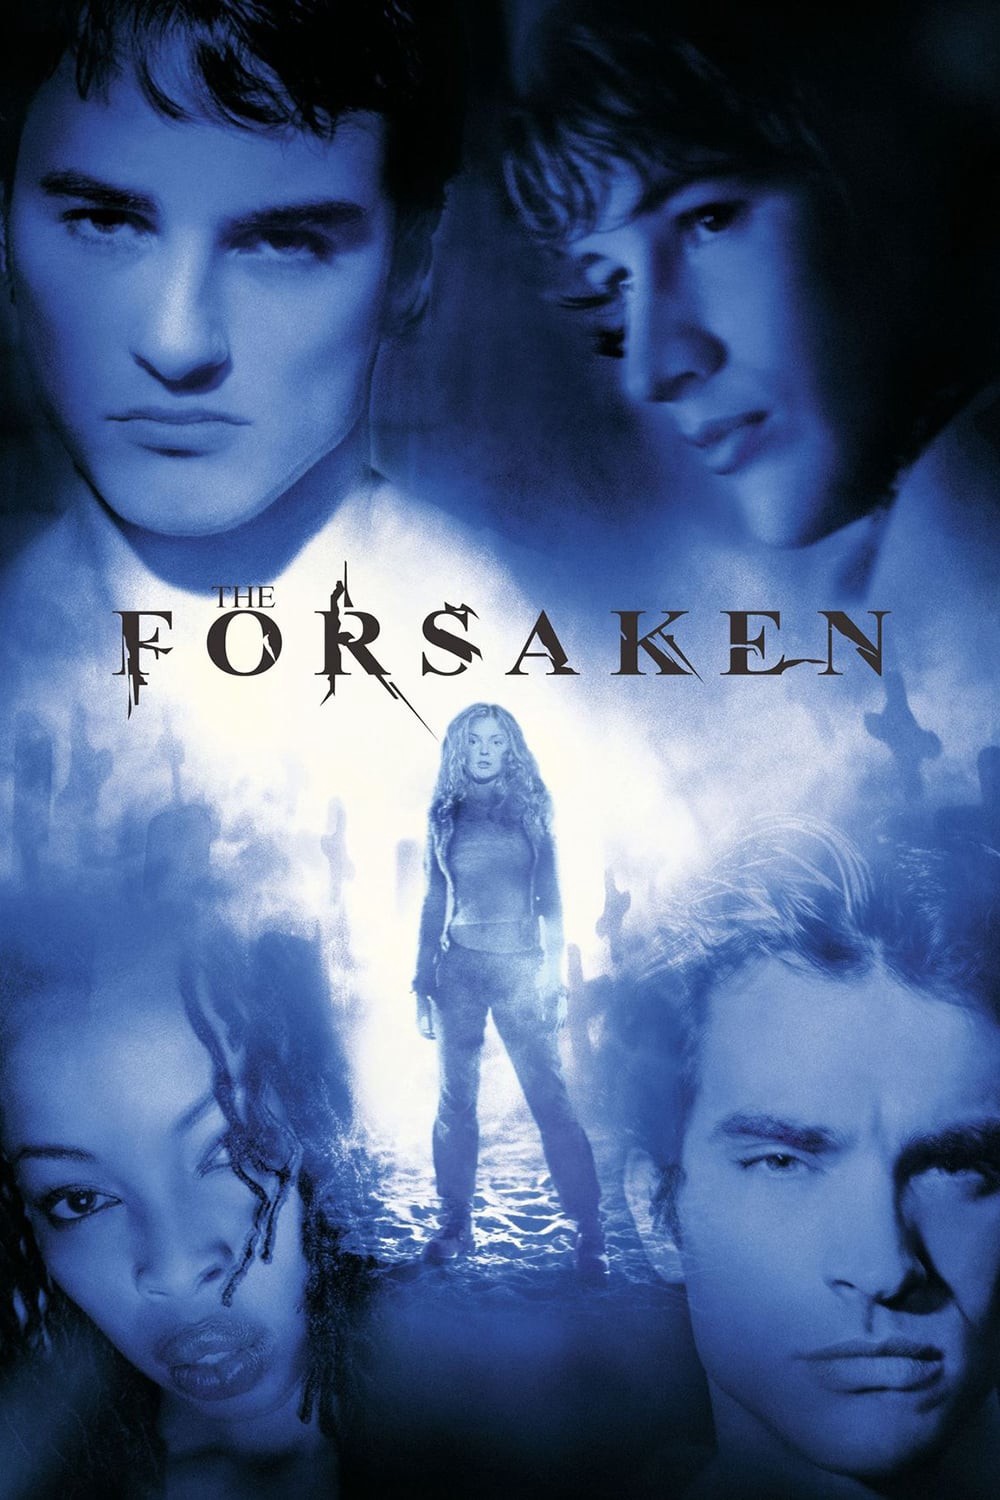 The Forsaken - The Forsaken